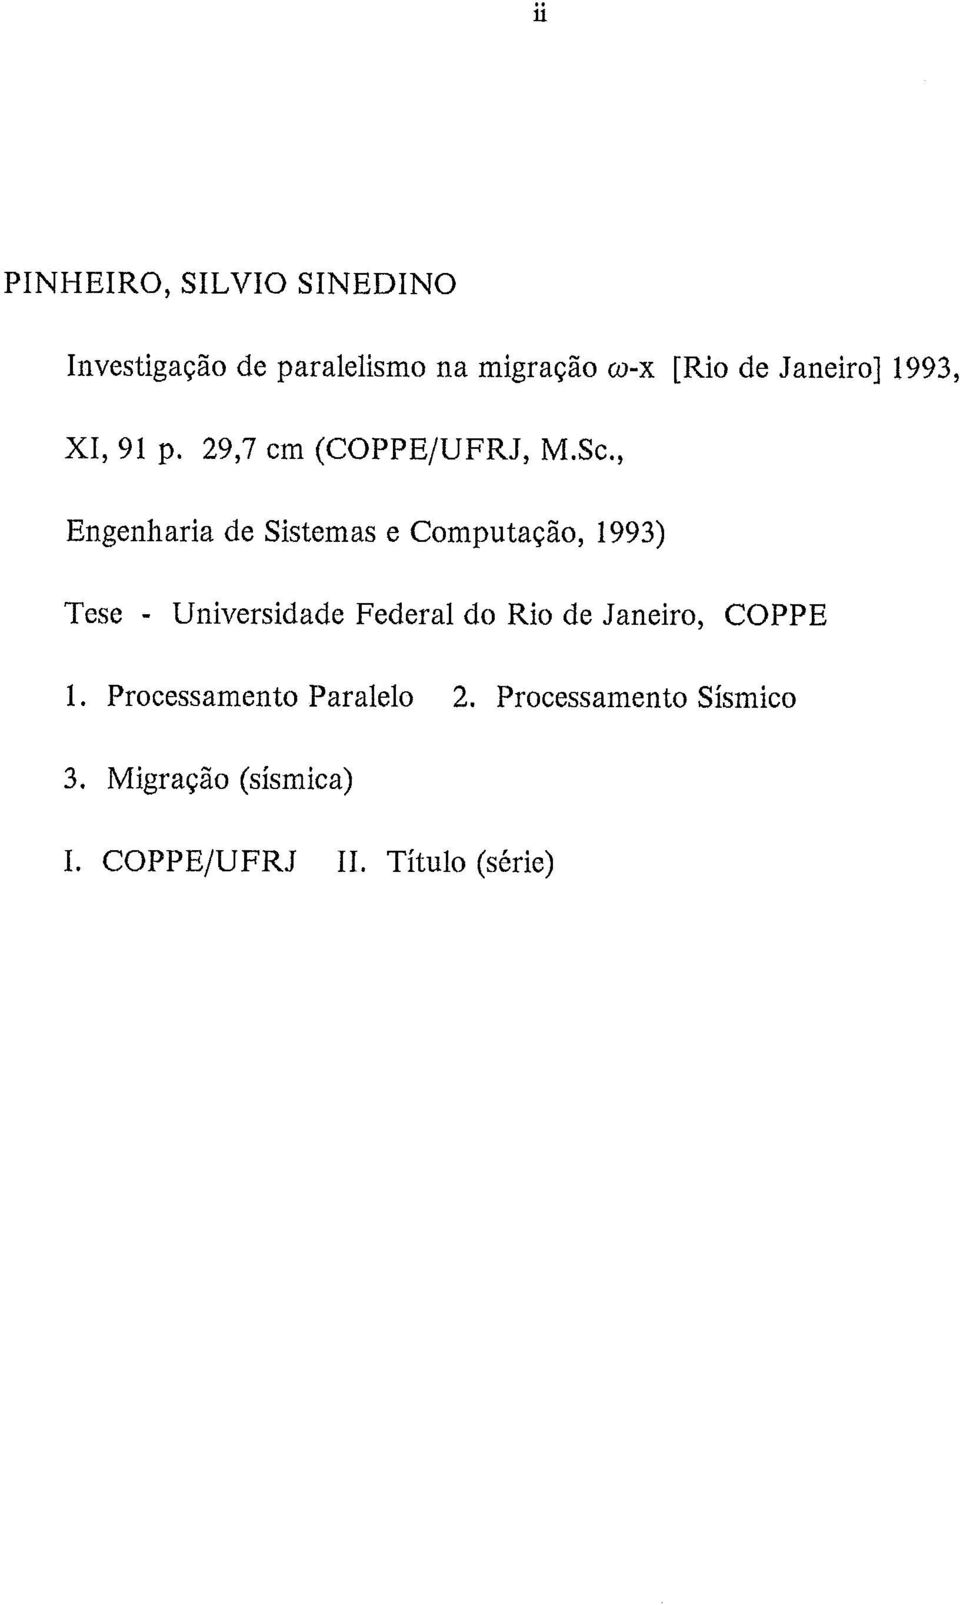 , Engenharia de Sistemas e Computação, 1993) Tese - Universidade Federal do Rio de